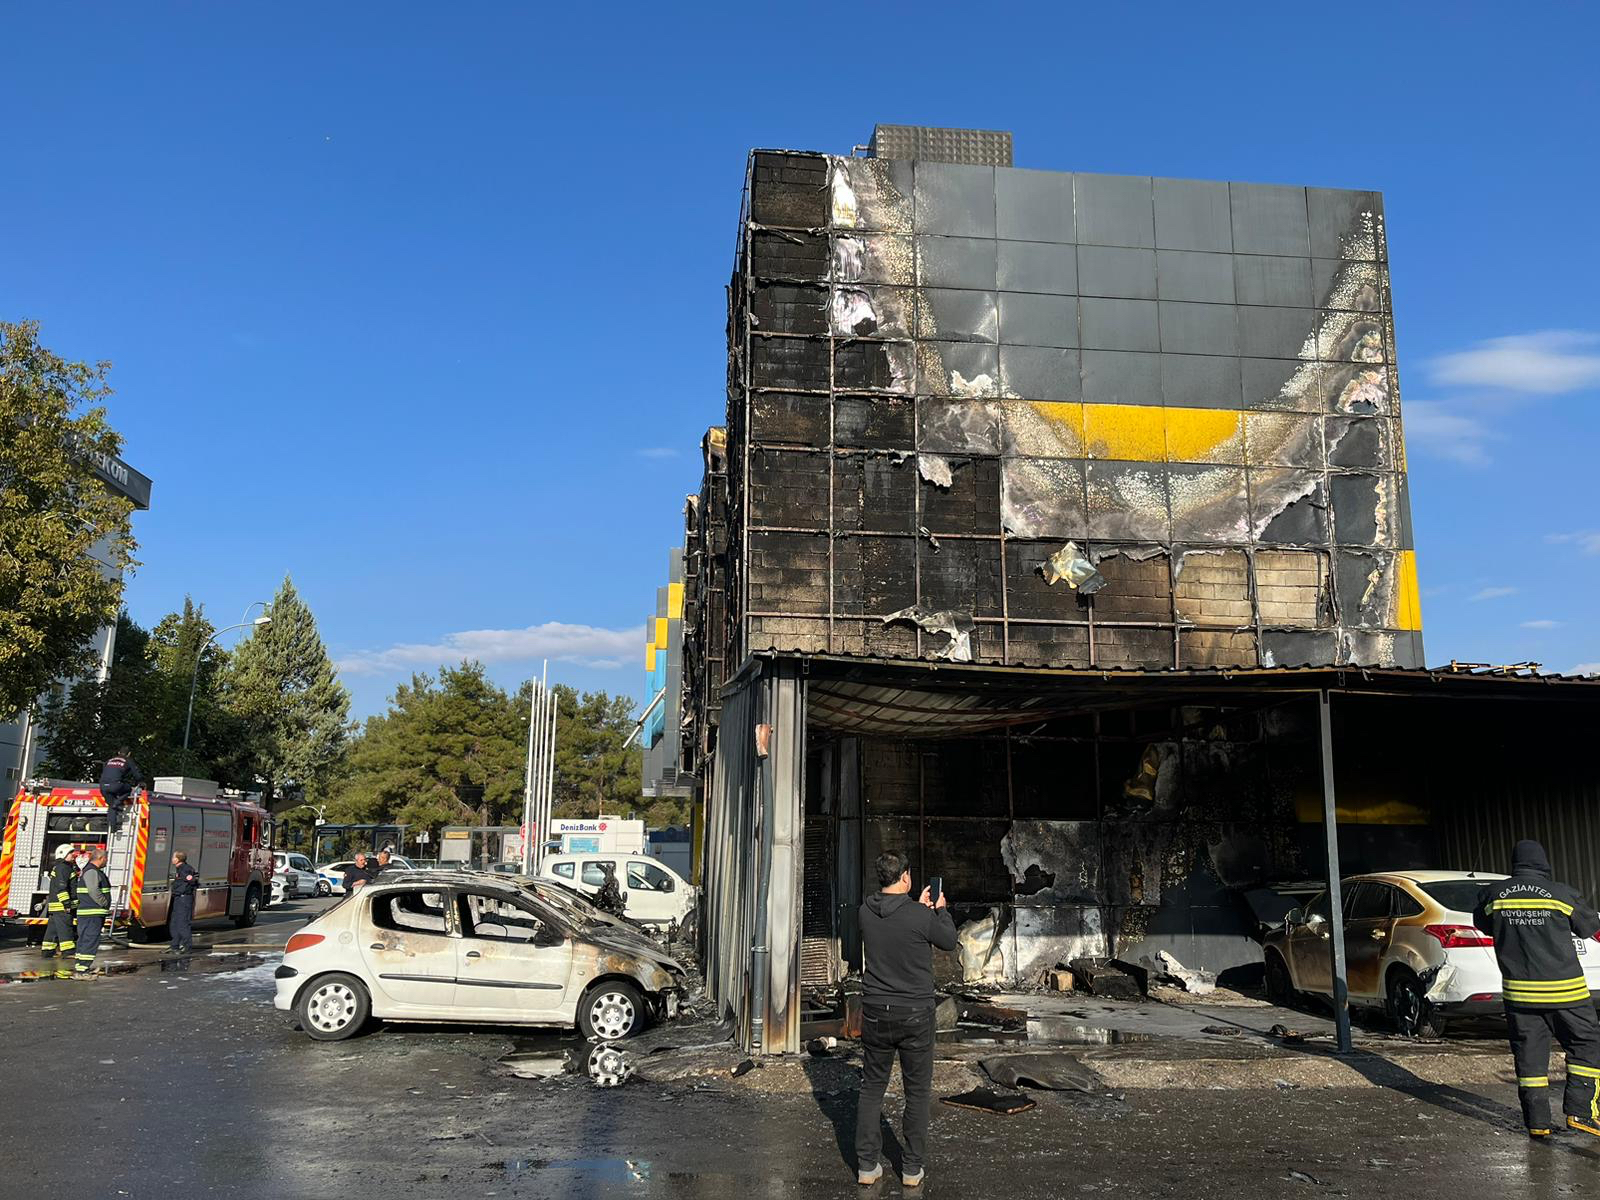 Gaziantep’te iş merkezinde çıkan yangında 5 araç zarar gördü